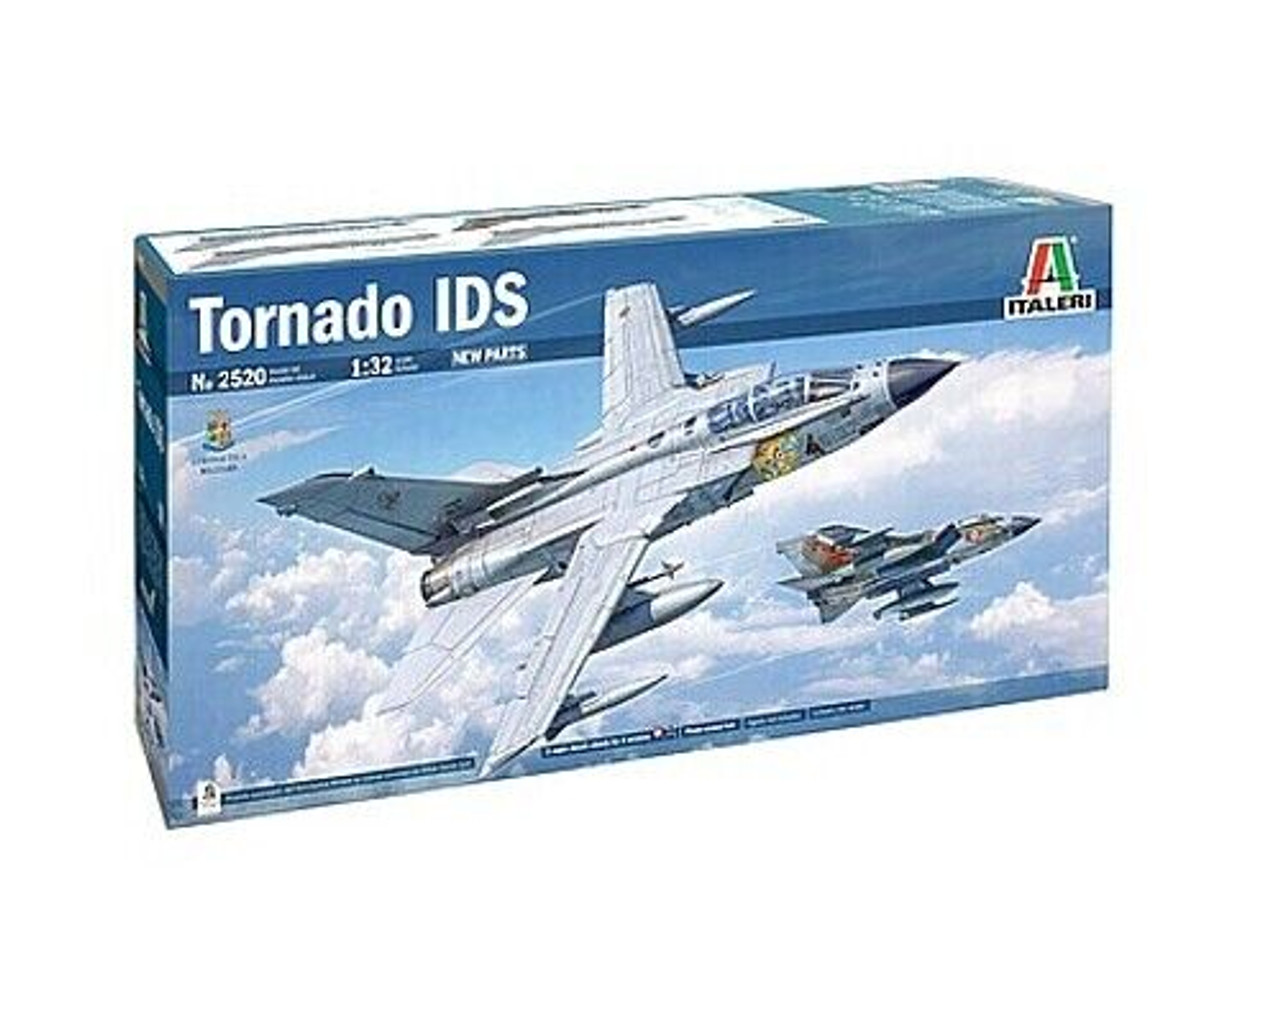 Italeri 552520 1:32 Tornado IDS Model Kit